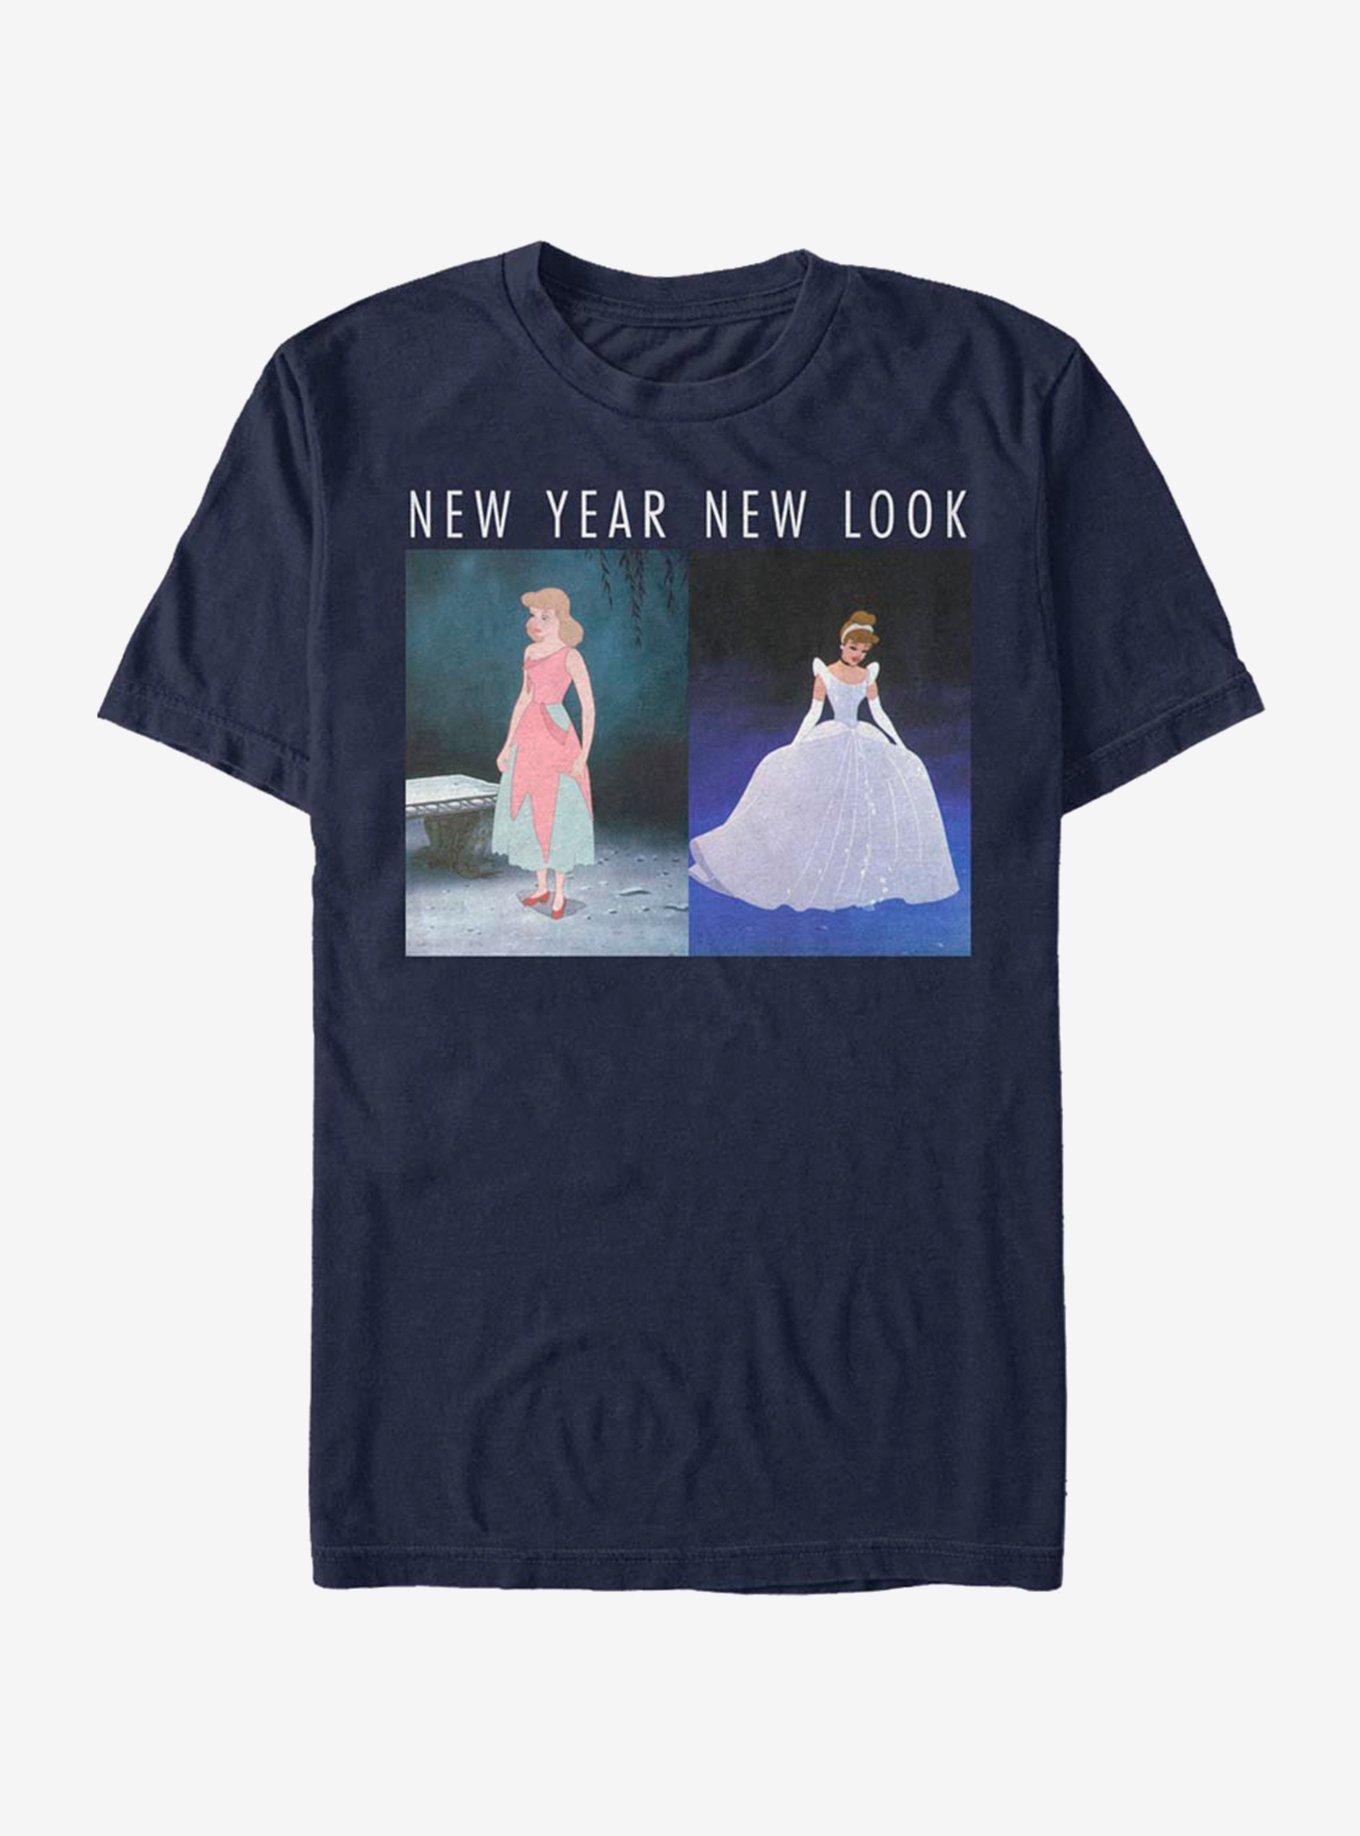 Disney Cinderella New Year Look T-Shirt, , hi-res